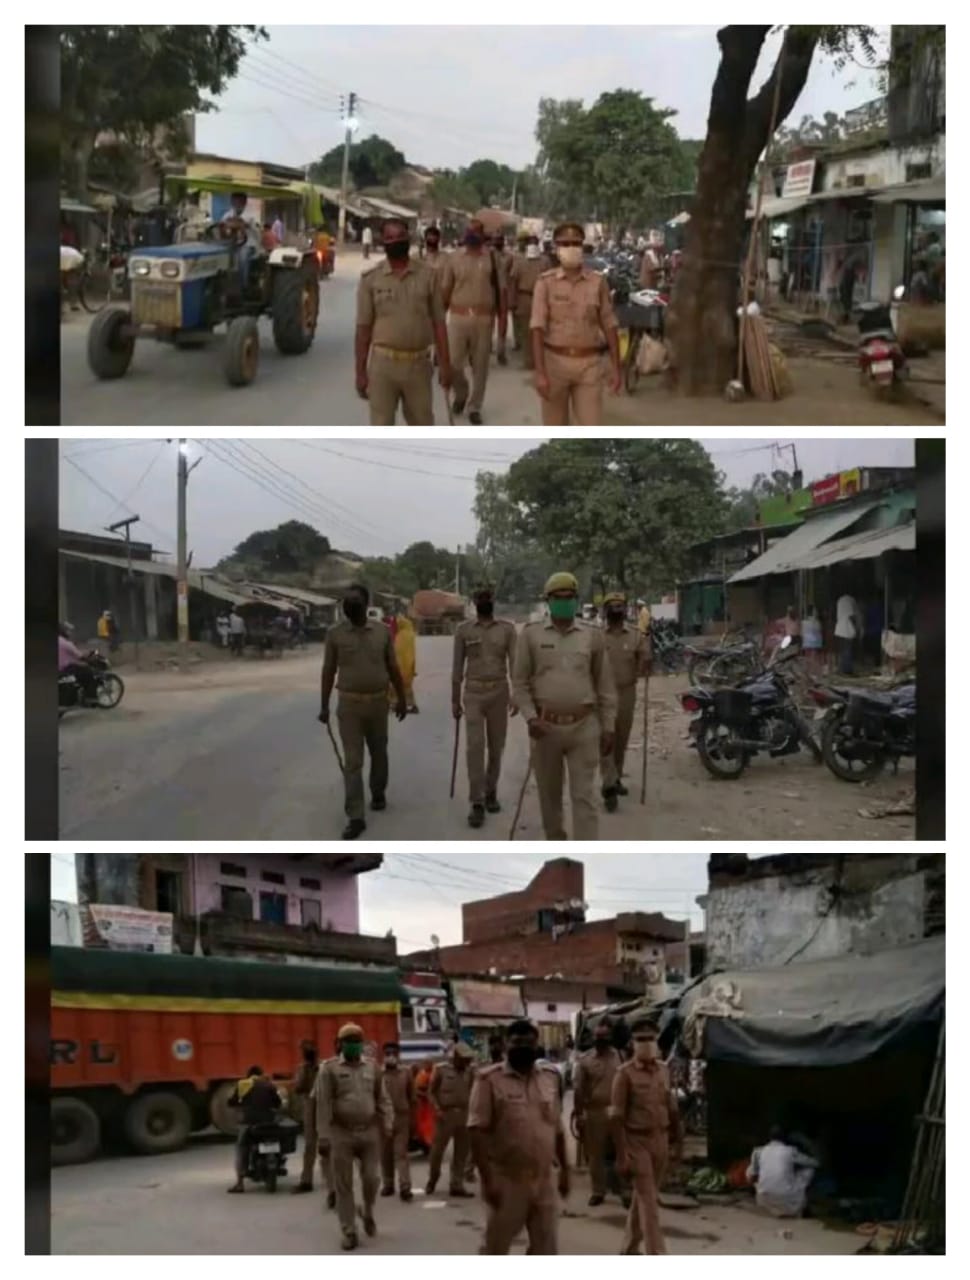 मिर्जापुर जिले के लालगंज में थाना प्रभारी के नेतृत्व में किया गया रुट मार्च।